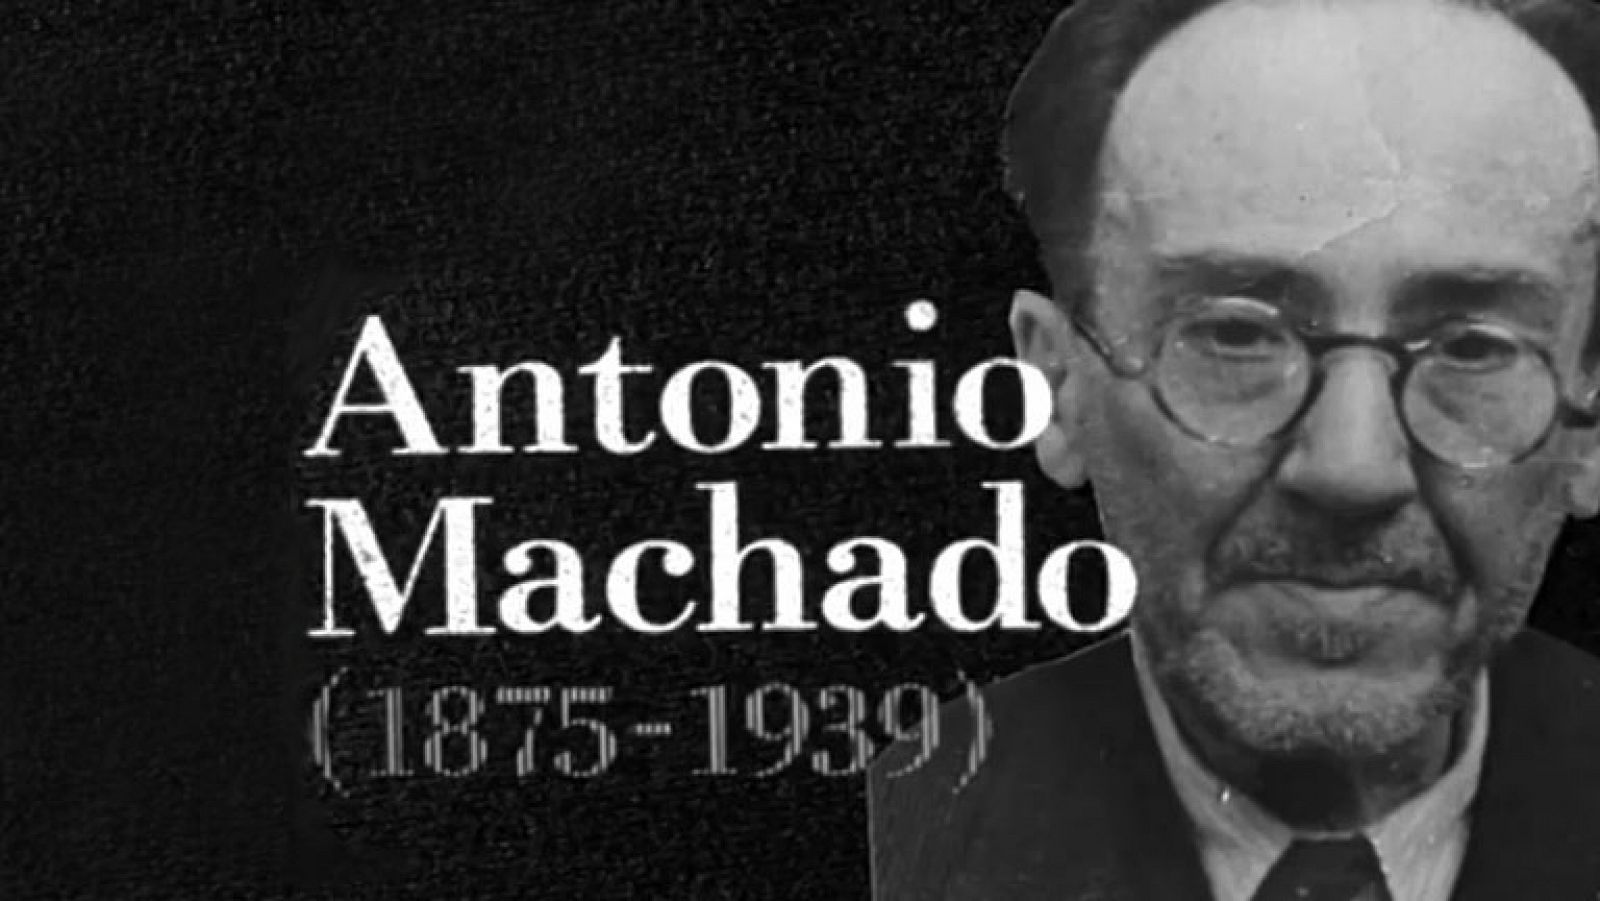 Biografía - Antonio Machado